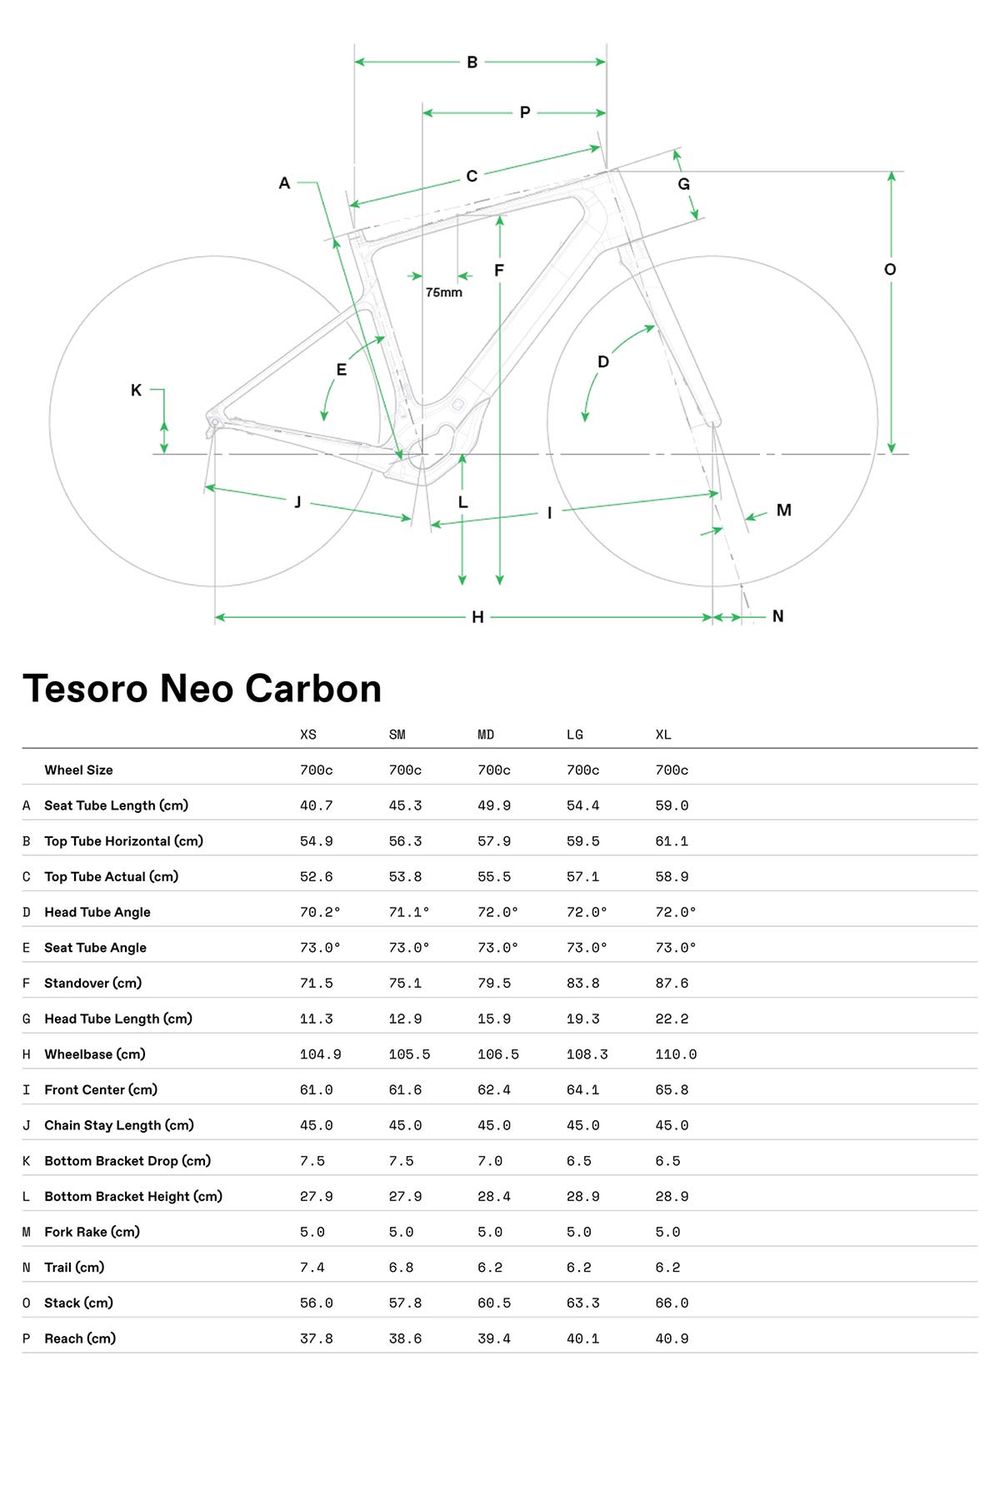 Tesoro Neo Carbon 2 - 